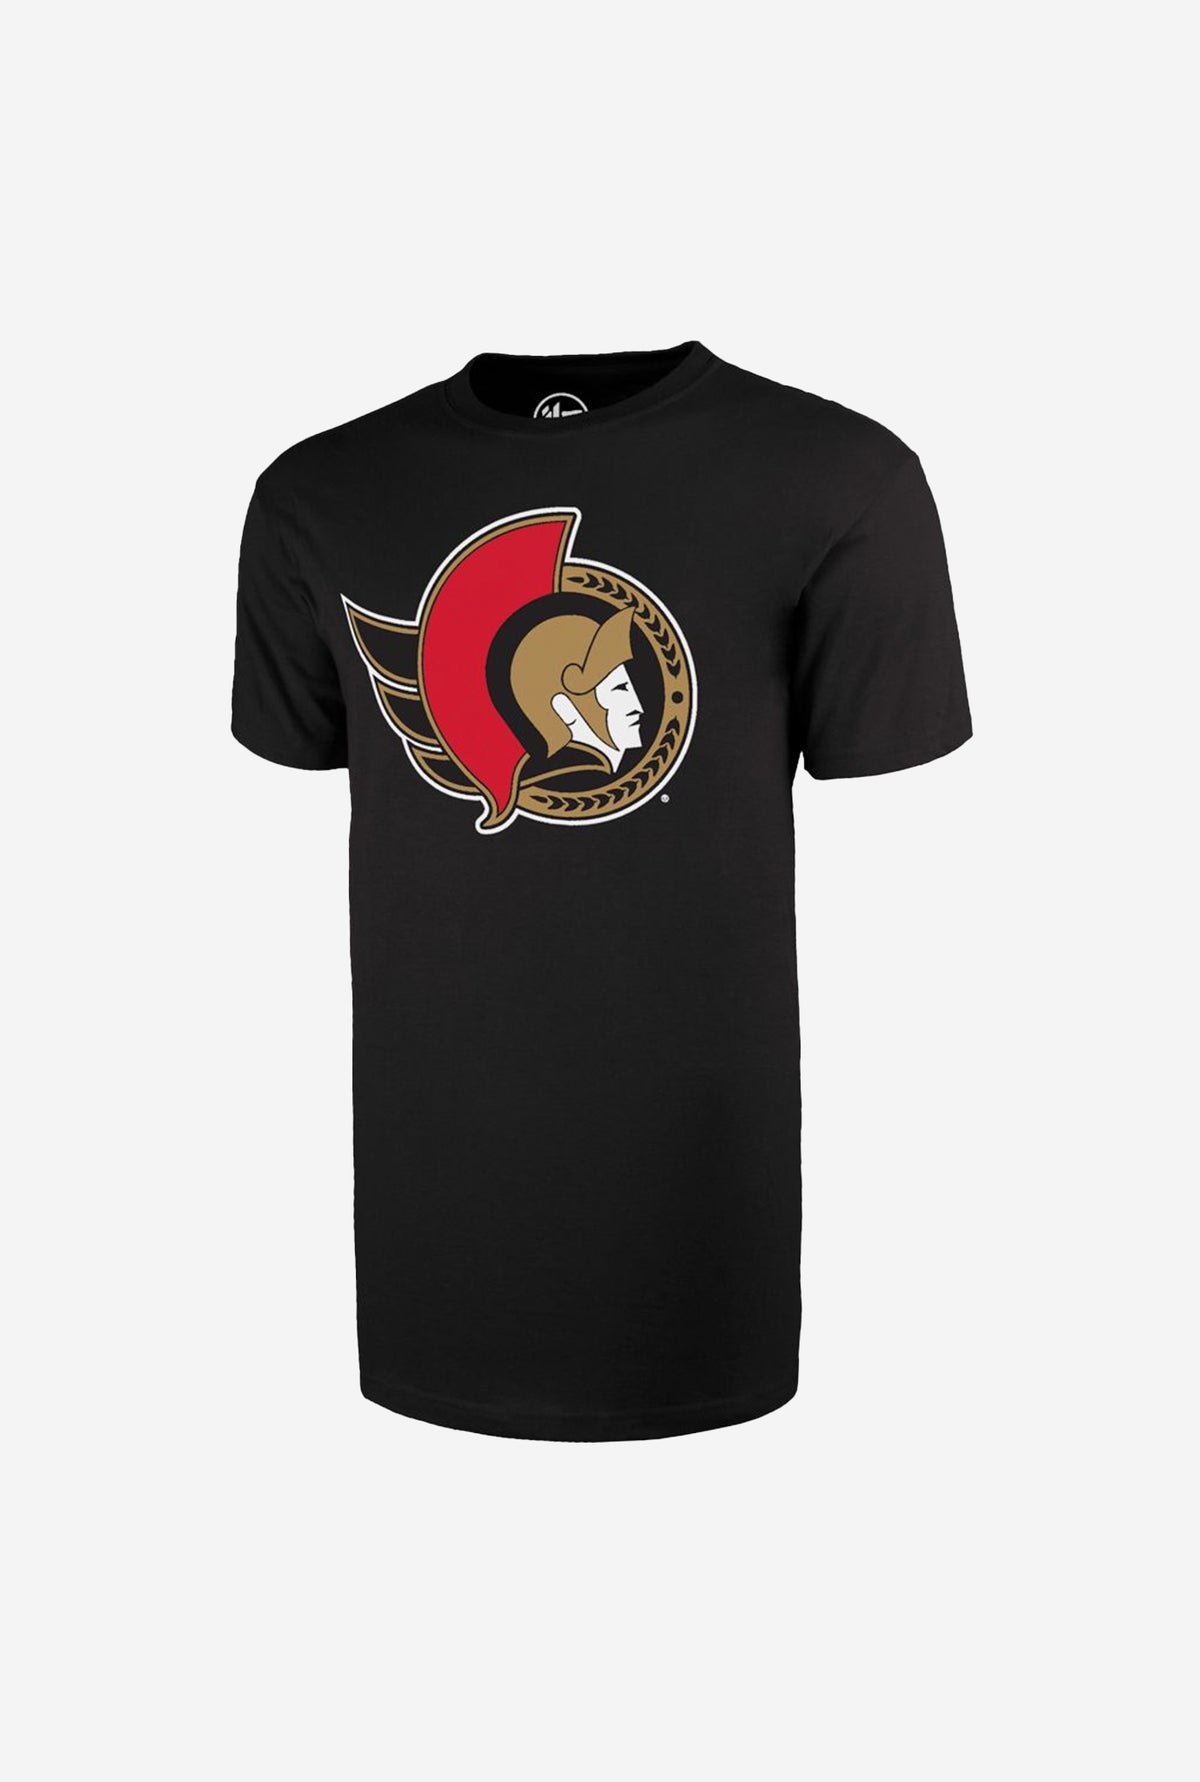 Ottawa Senators Fan T-Shirt